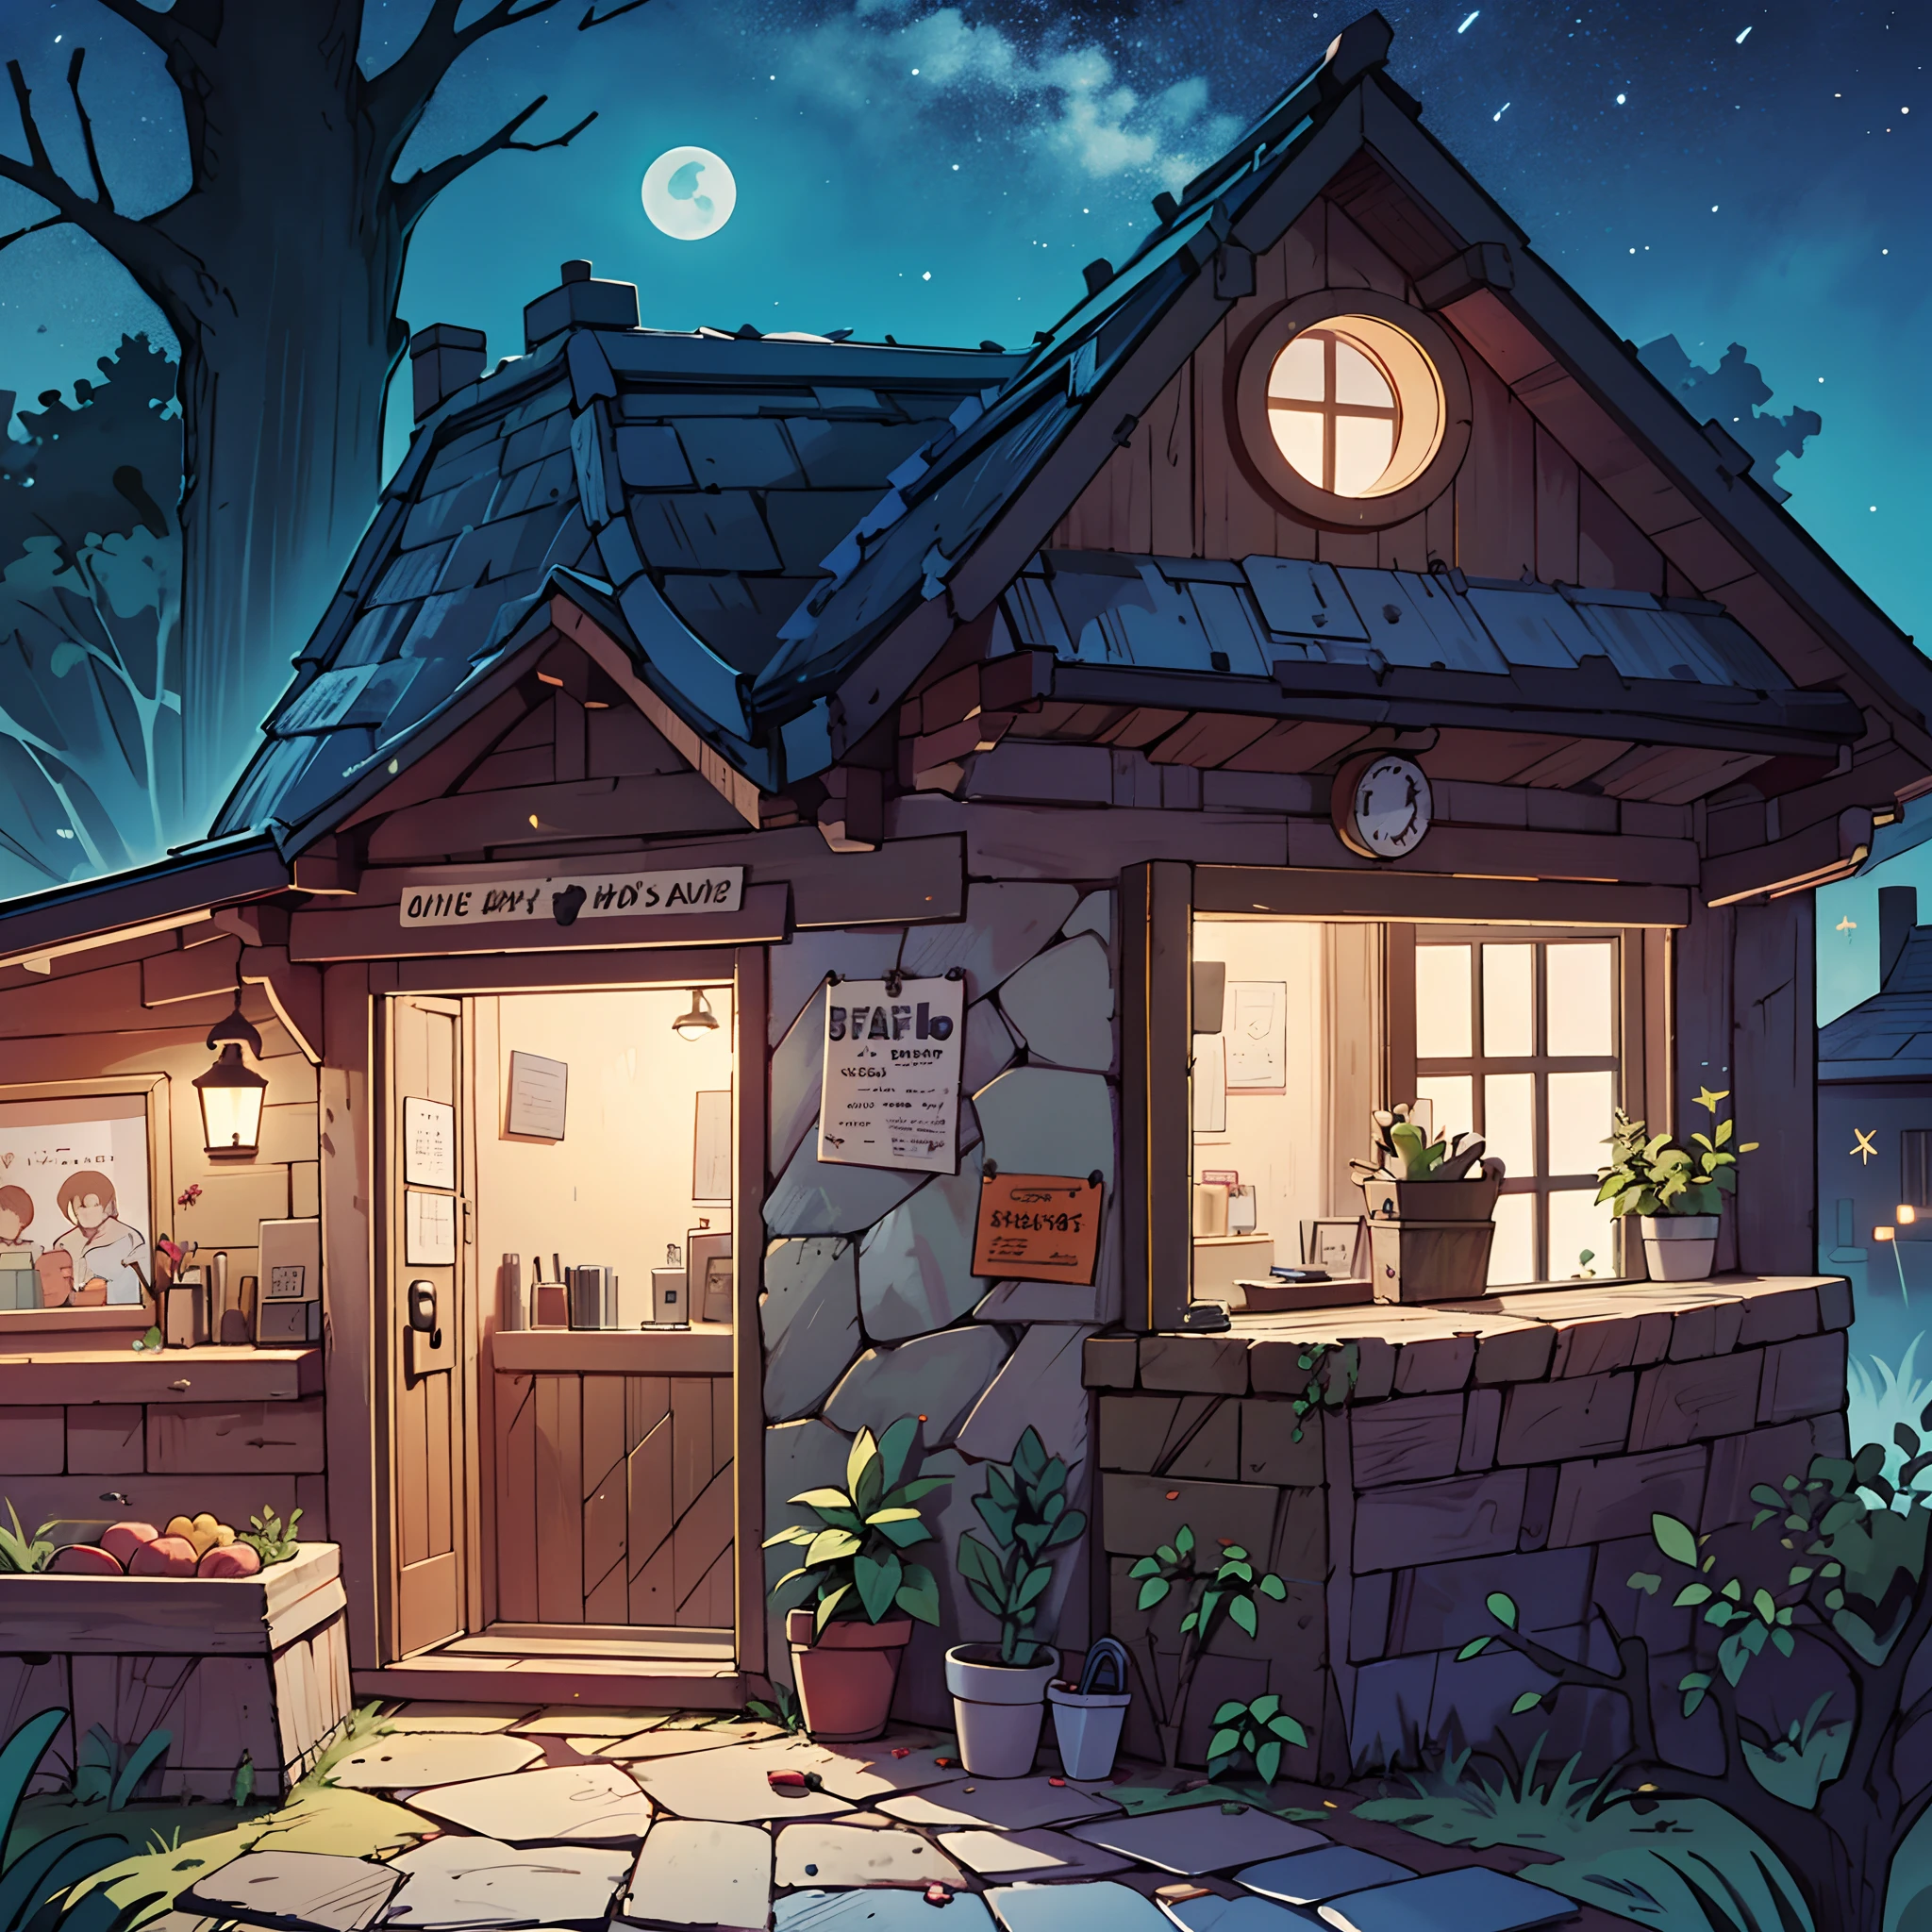 夜间, 看起来舒适的小屋. 一家门很神秘的商店. 动漫背景